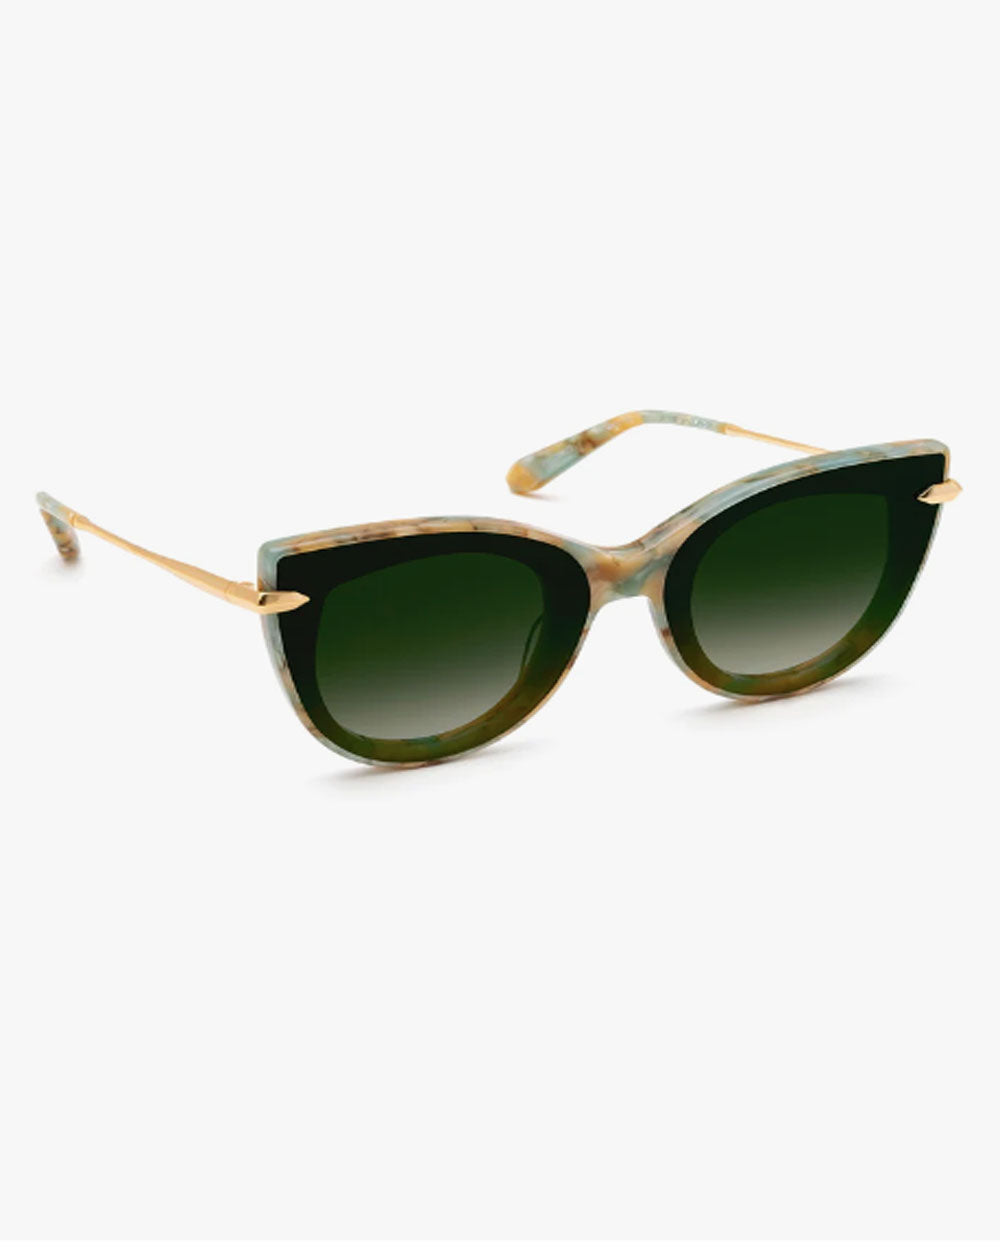 Laveau Nylon Sunglasses in Pearlescent